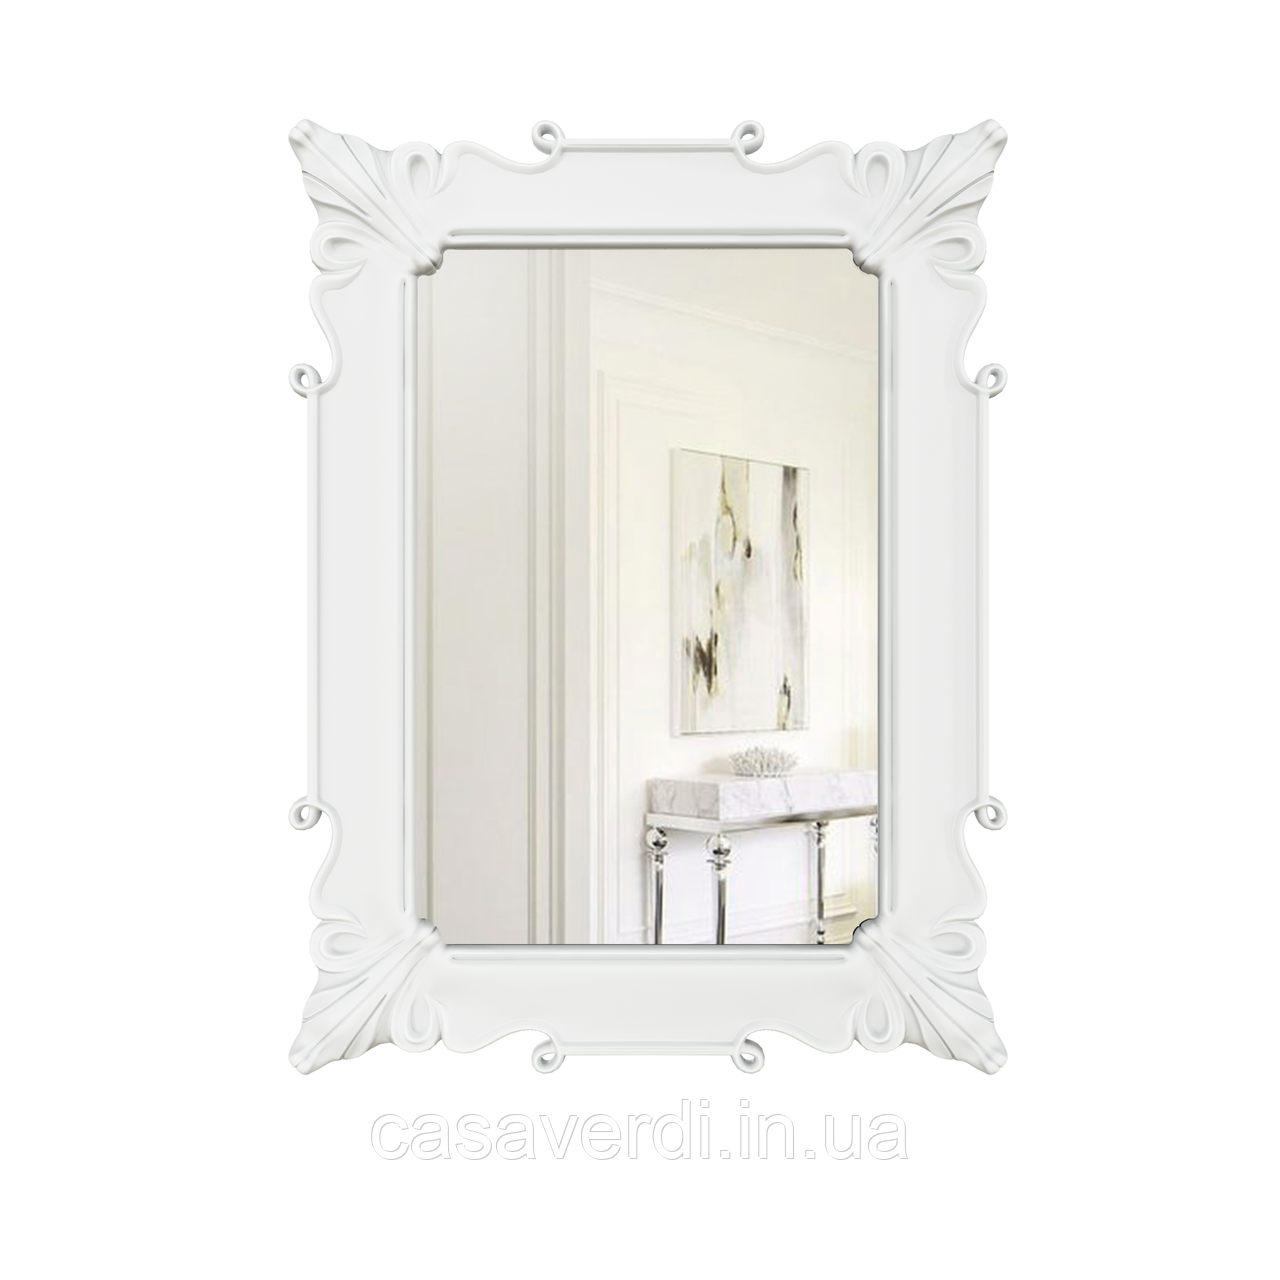 Дзеркало настінне прямокутне Casa Verdi Clar 126 см х 95 см , біле. Рама МДФ